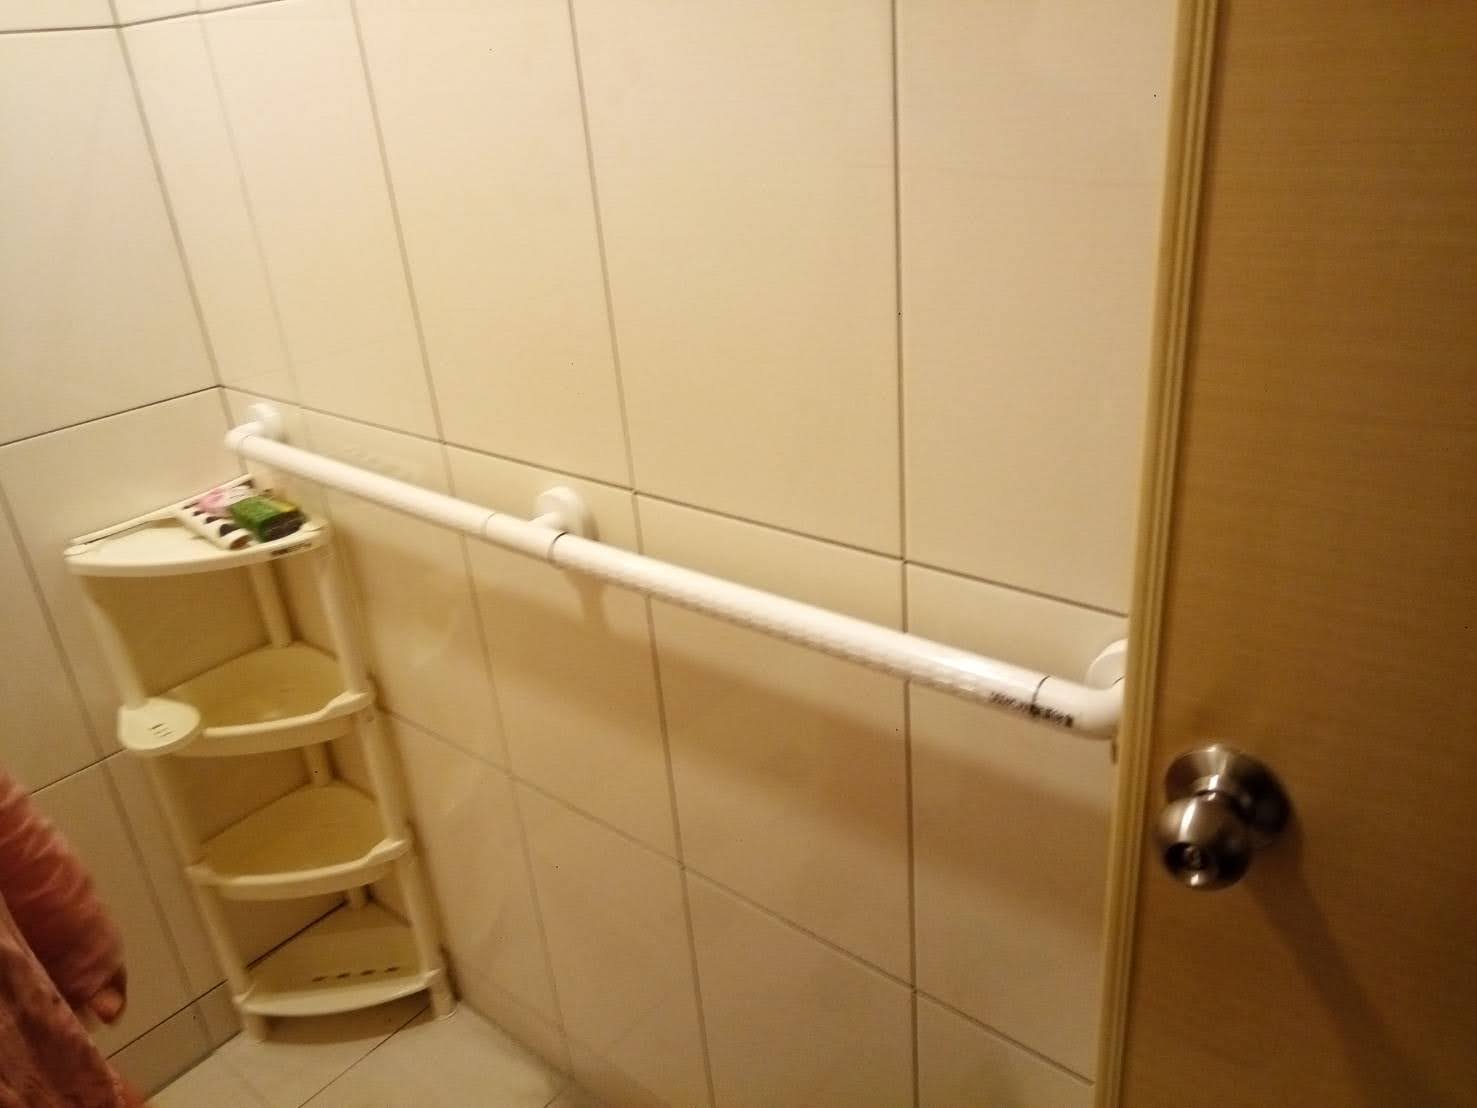 無障礙浴室改善 ABS一字型抗菌防滑扶手